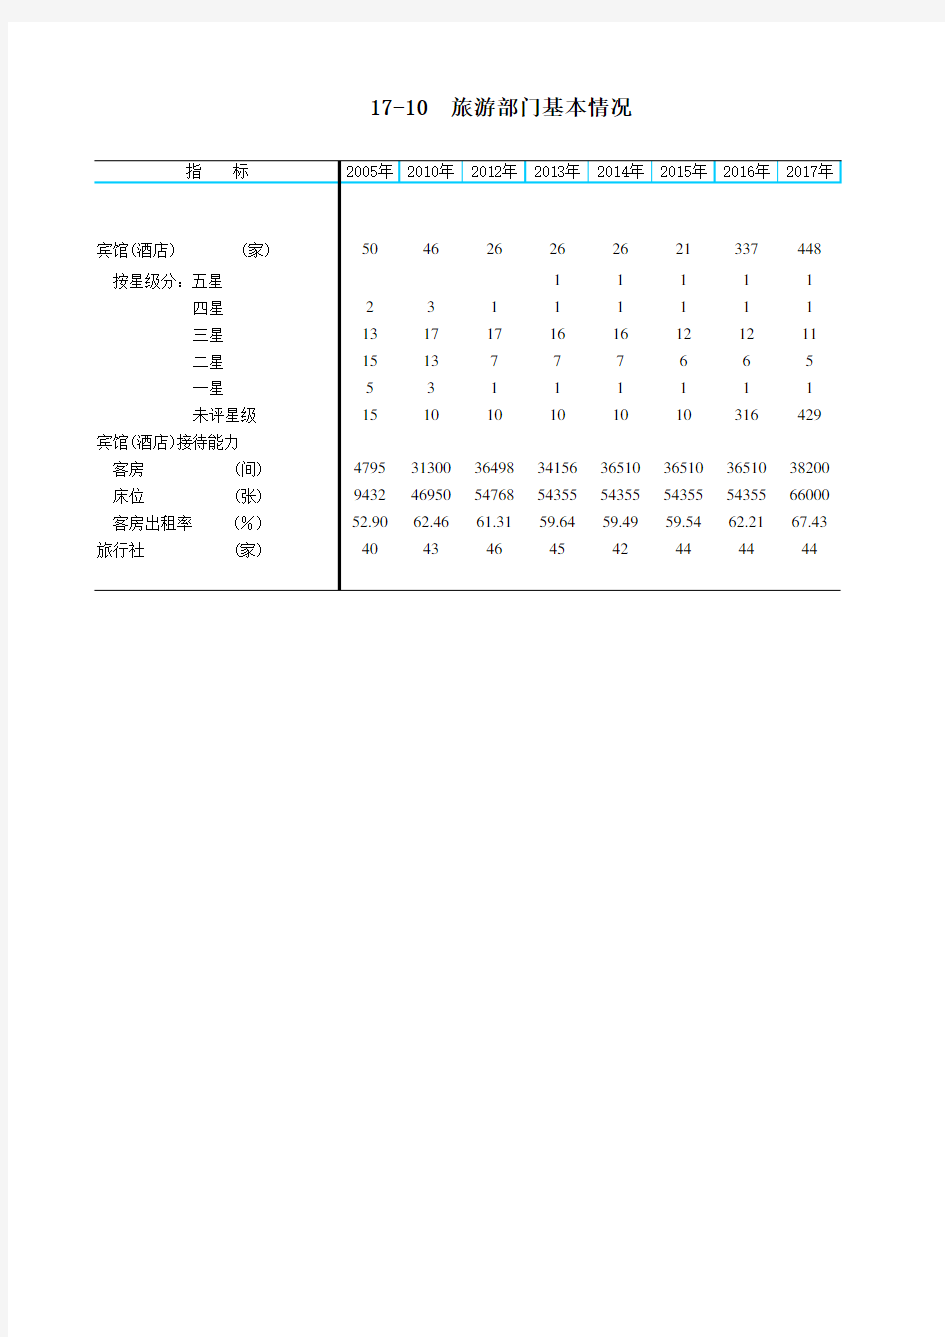 肇庆市社会经济发展指标数据：17-10  旅游部门基本情况(2005-2018)